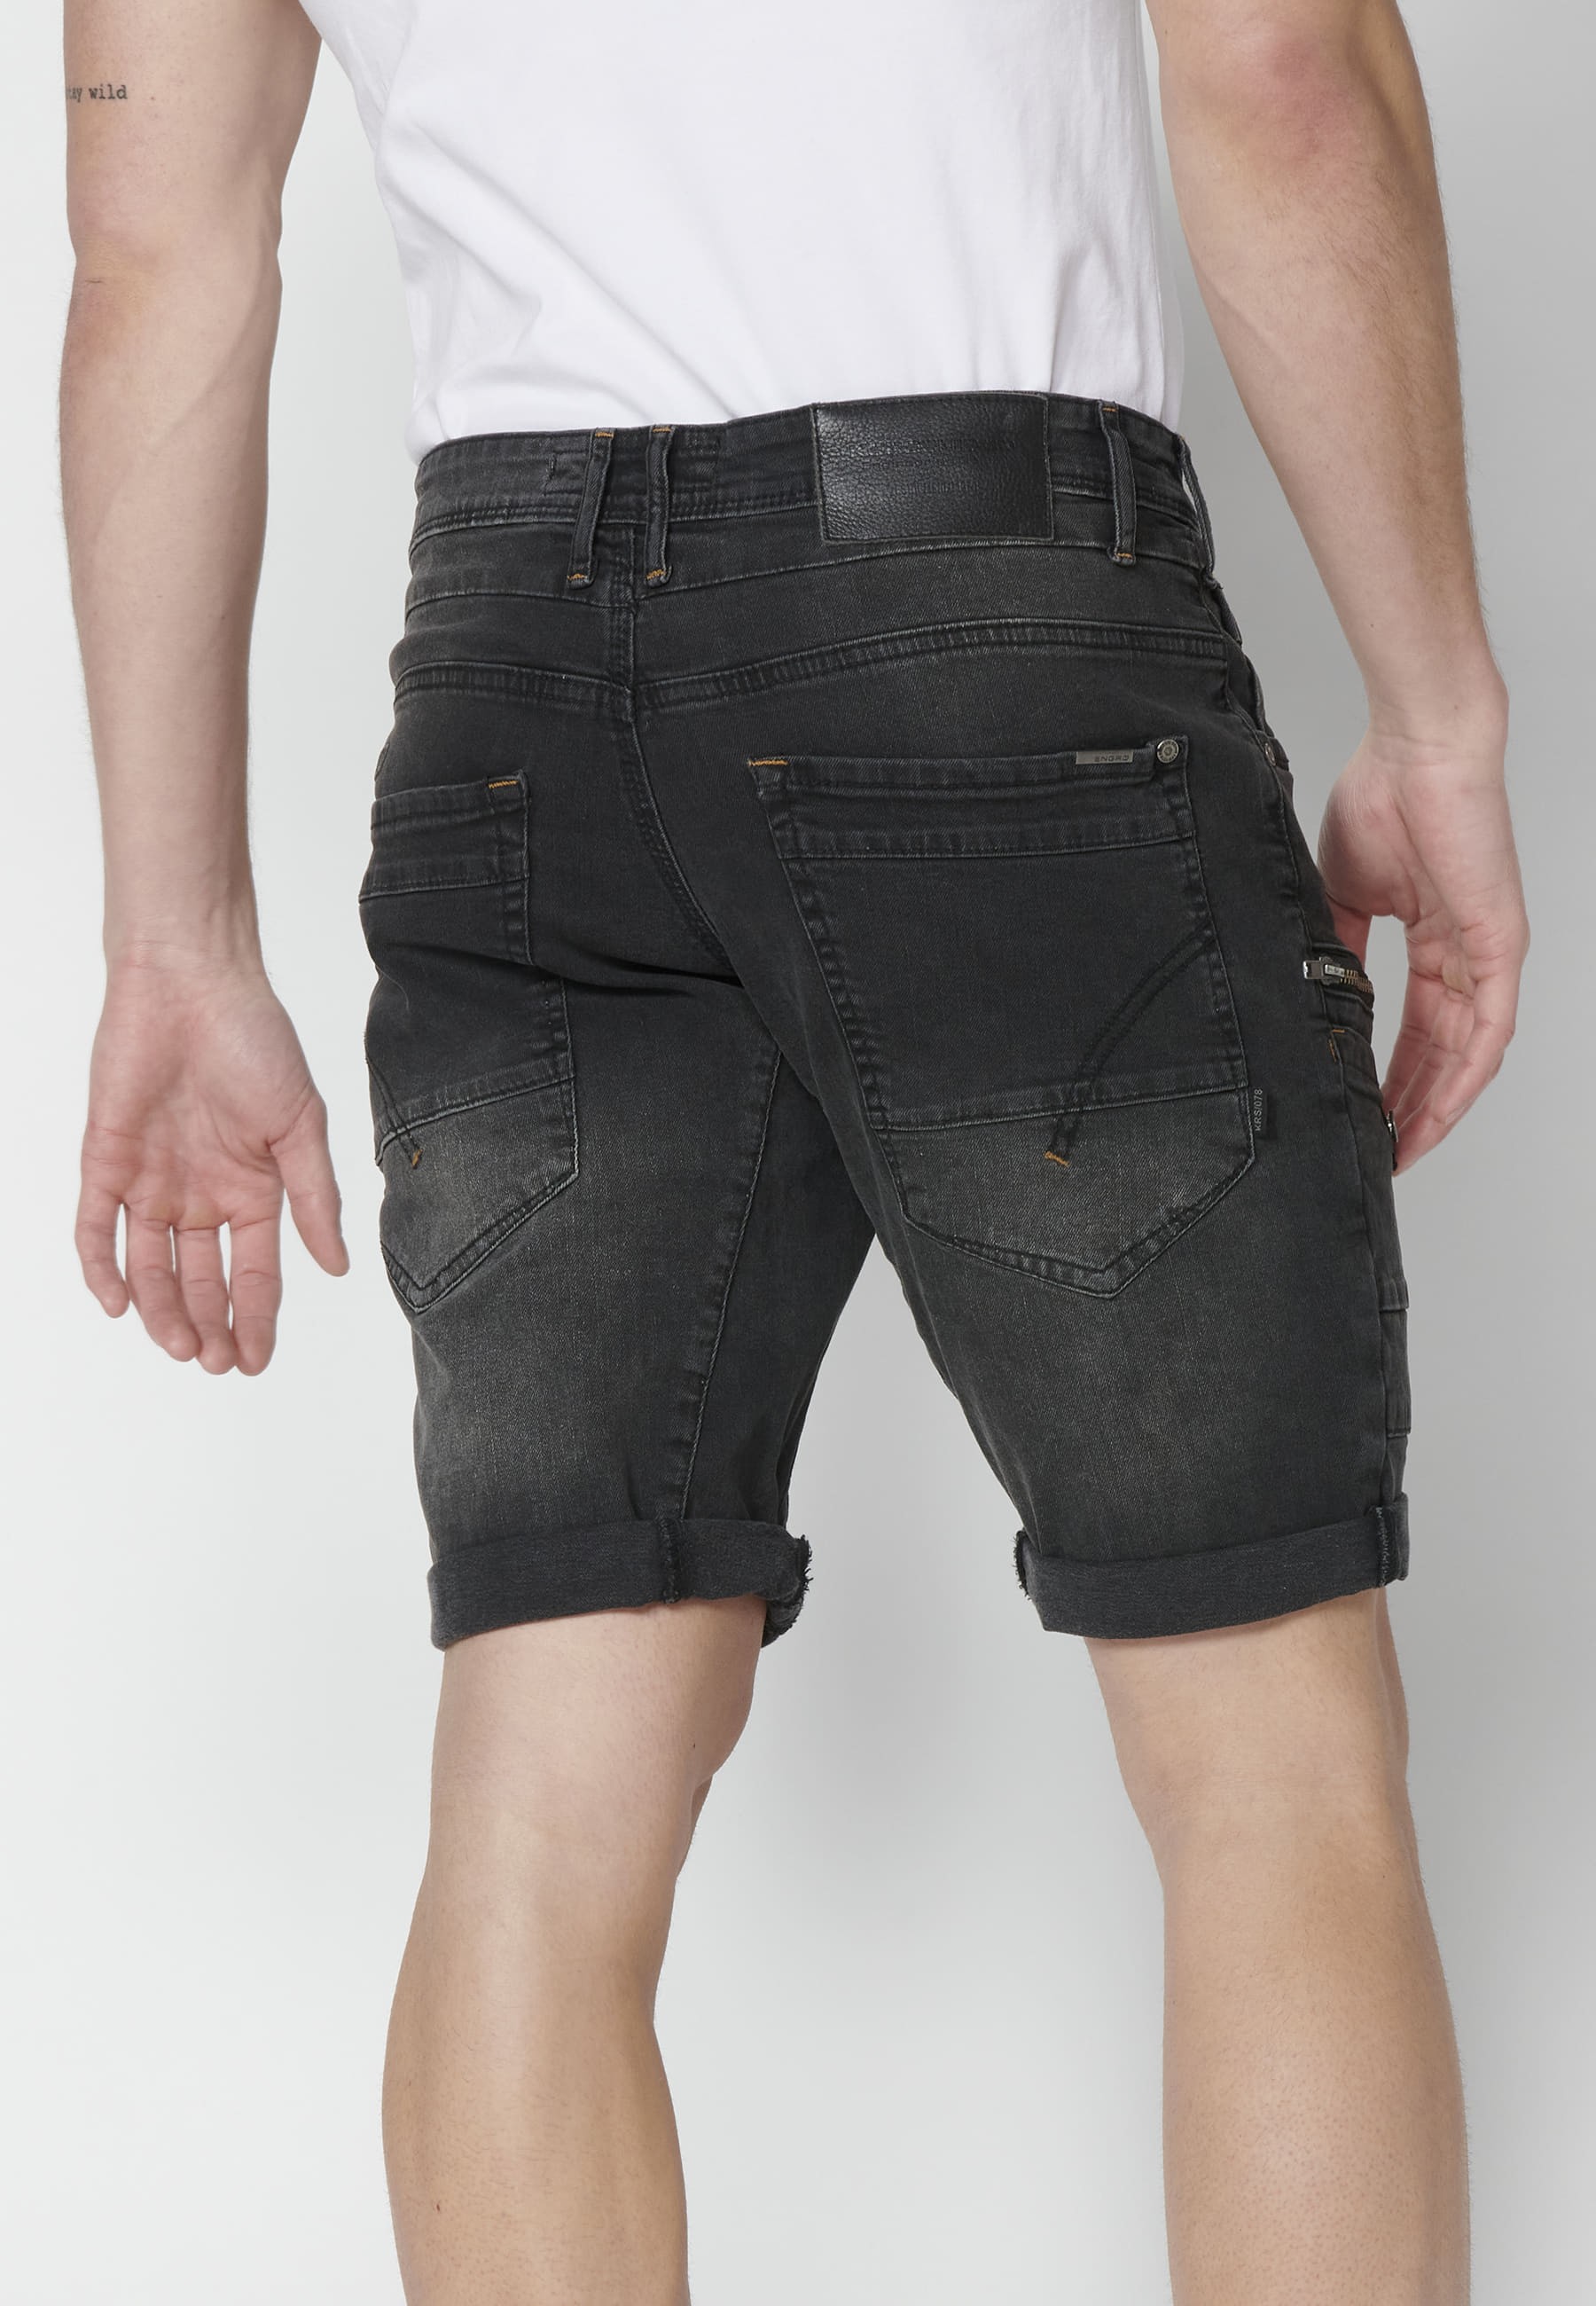 Shorts Bermuda Denim Stretch Regular Fit with four pockets Black color for Men